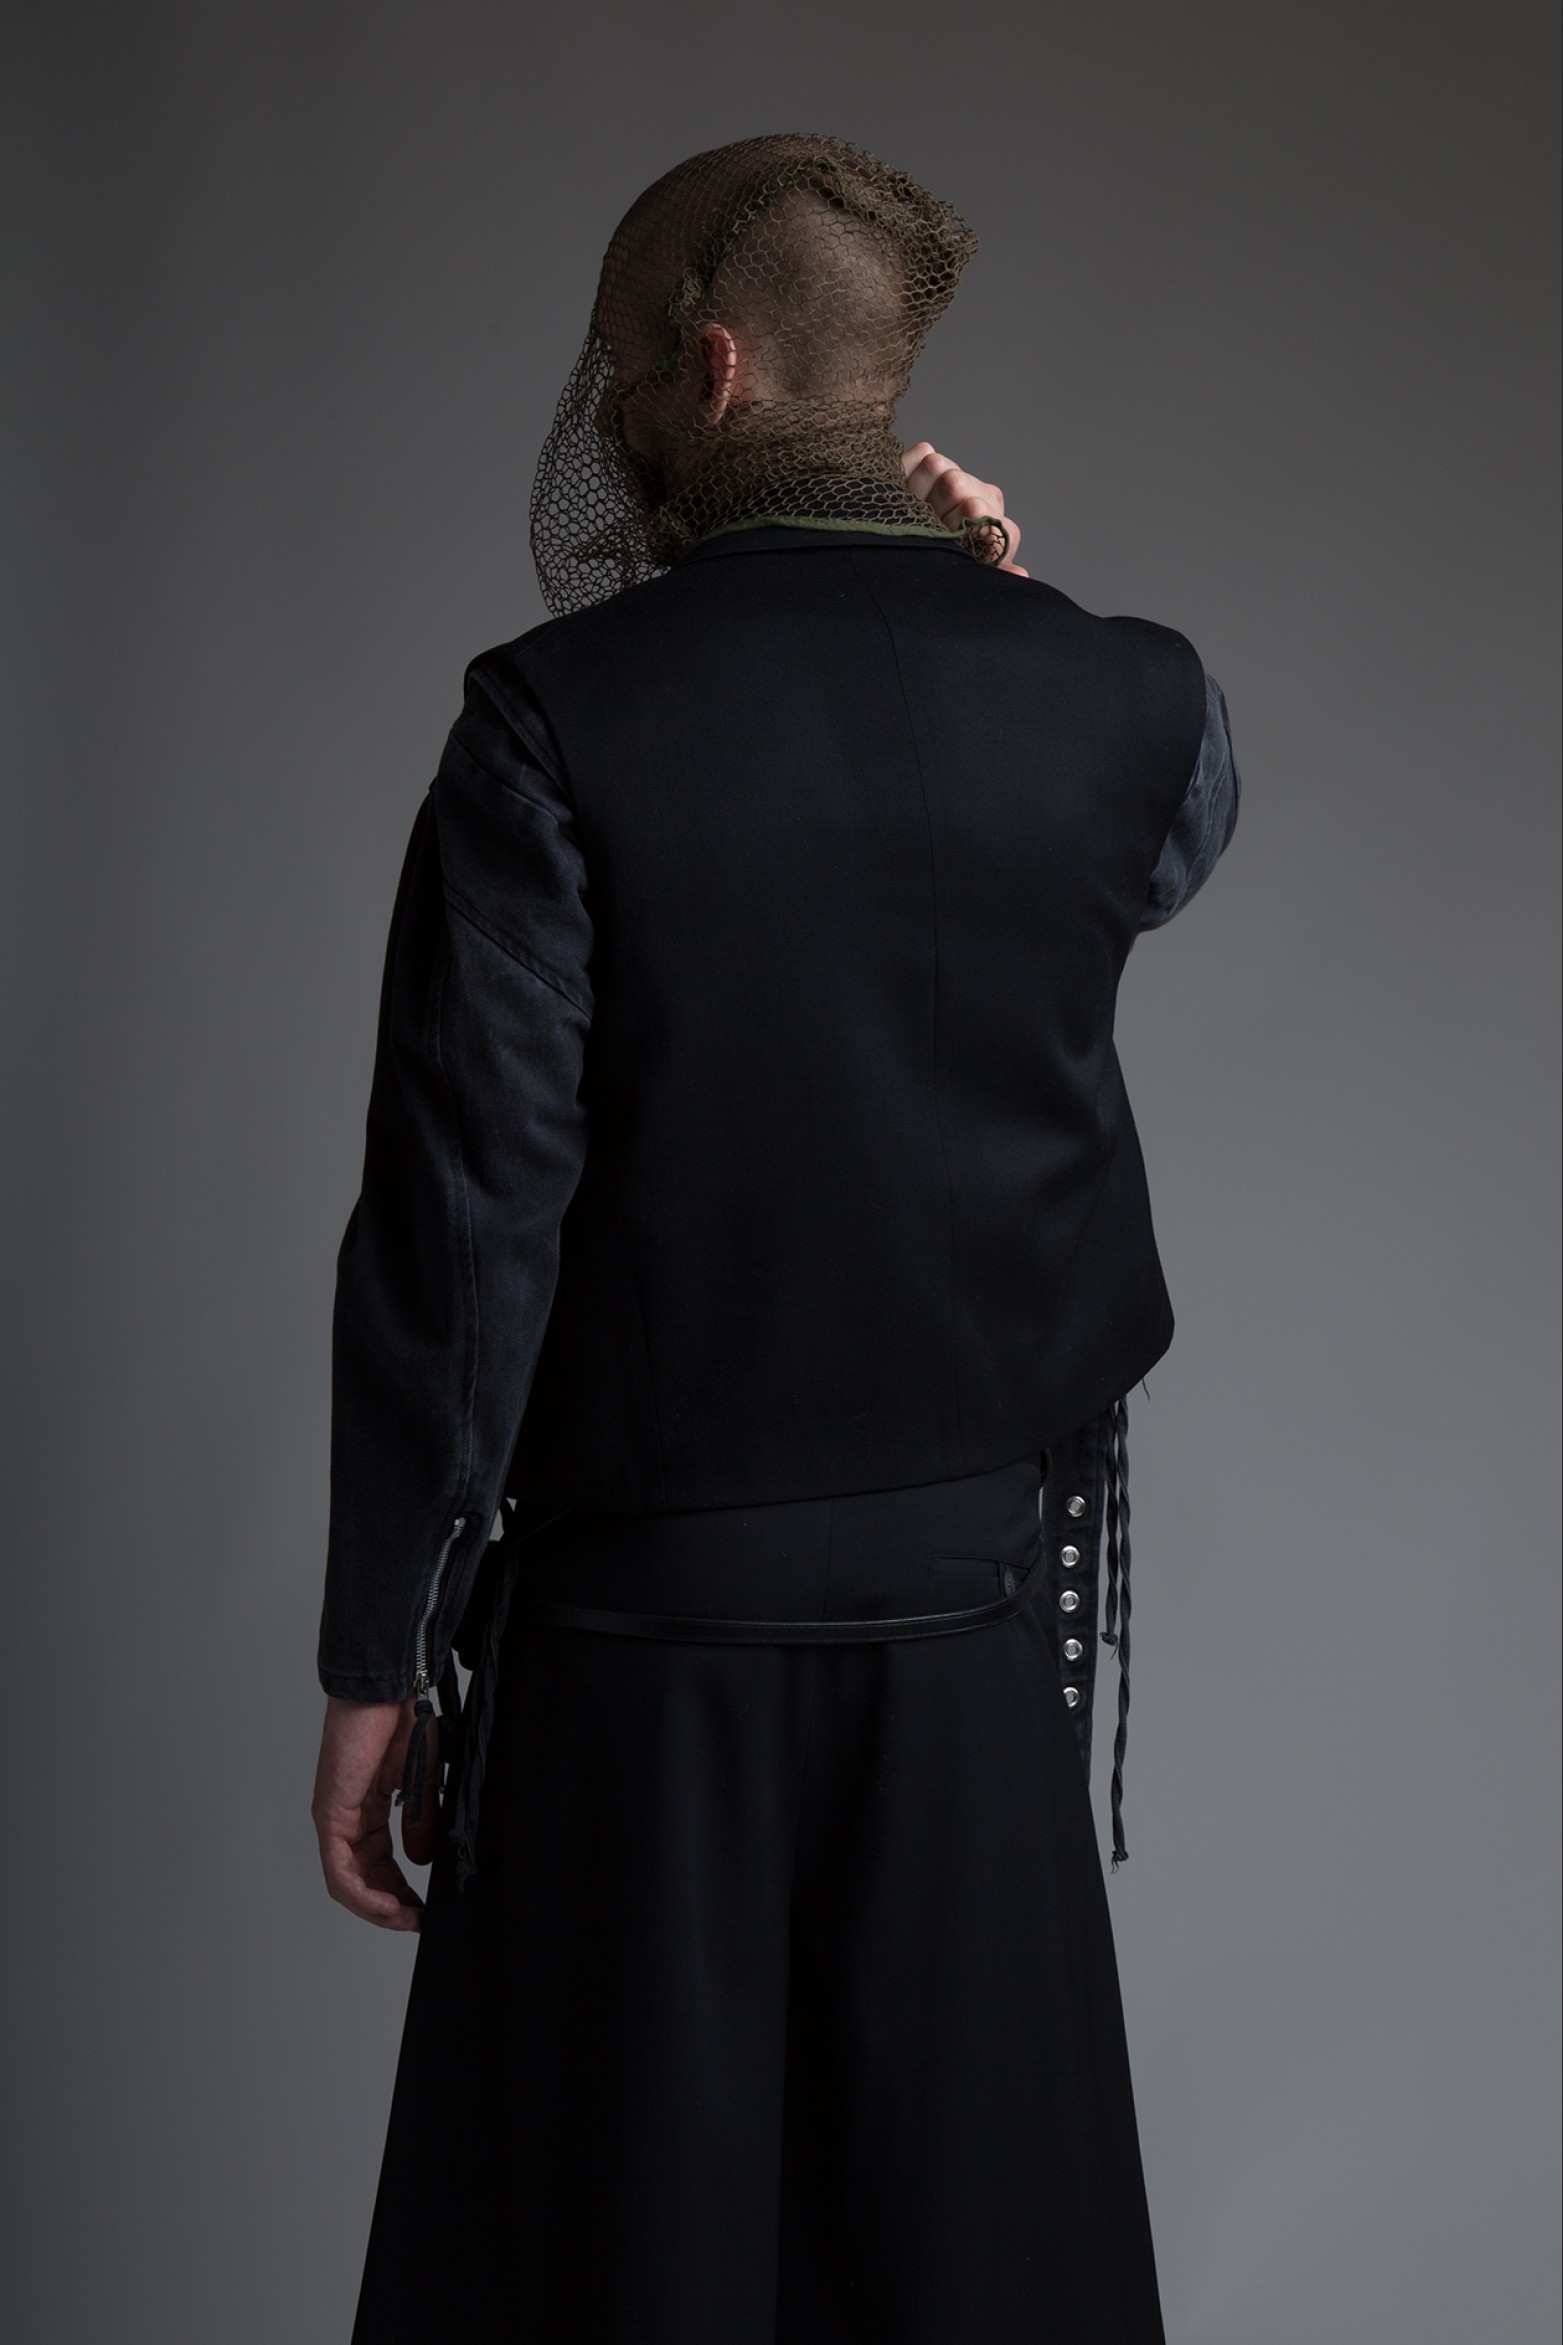 Hed Mayner Sleeveless Suit Jacket | The New World Order